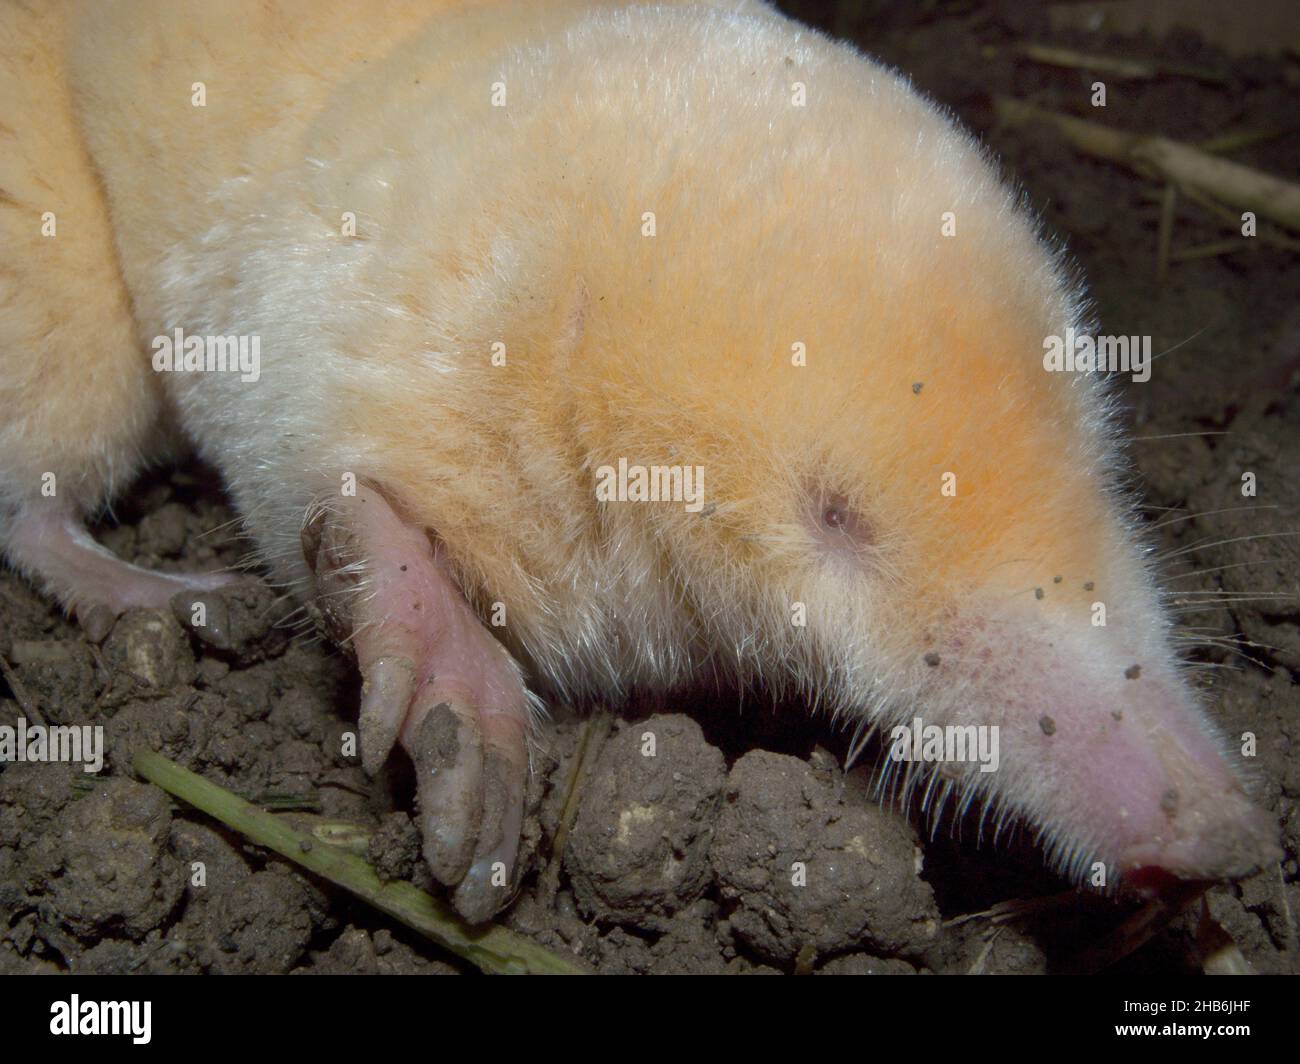 Mole europee, mole comuni, mole settentrionali (Talpa europaea), albino, ritratto, Germania Foto Stock